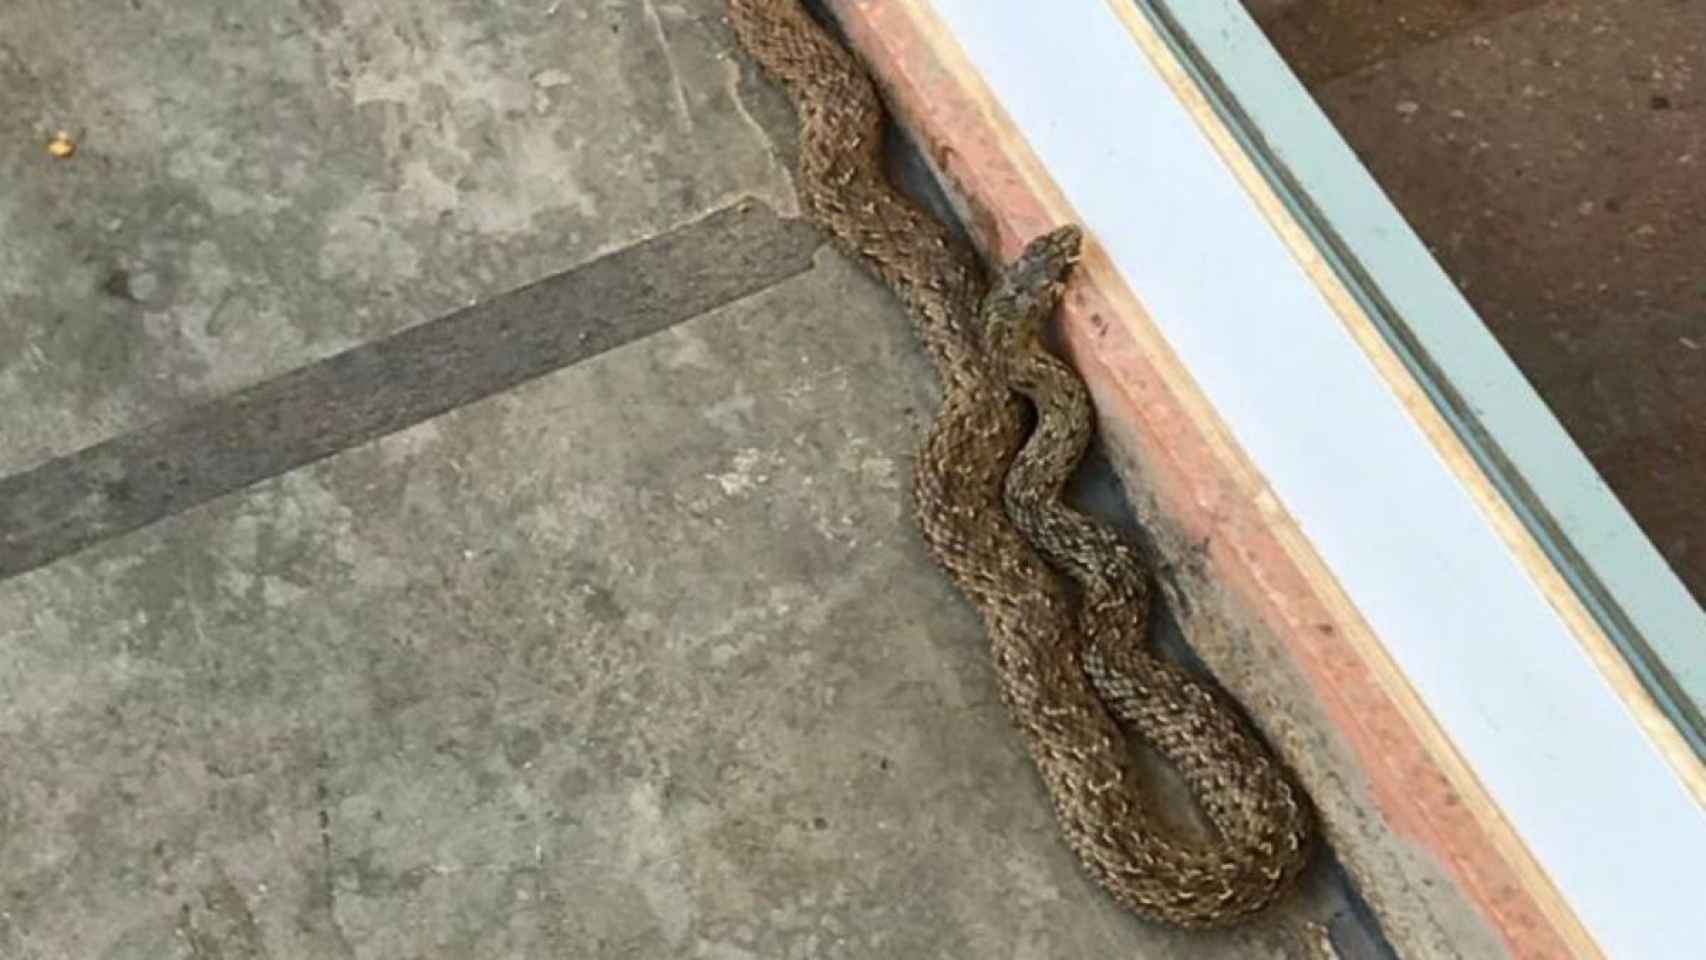 La serpiente que se encontró en la escuela Turó del Cargol es una culebra bastarda